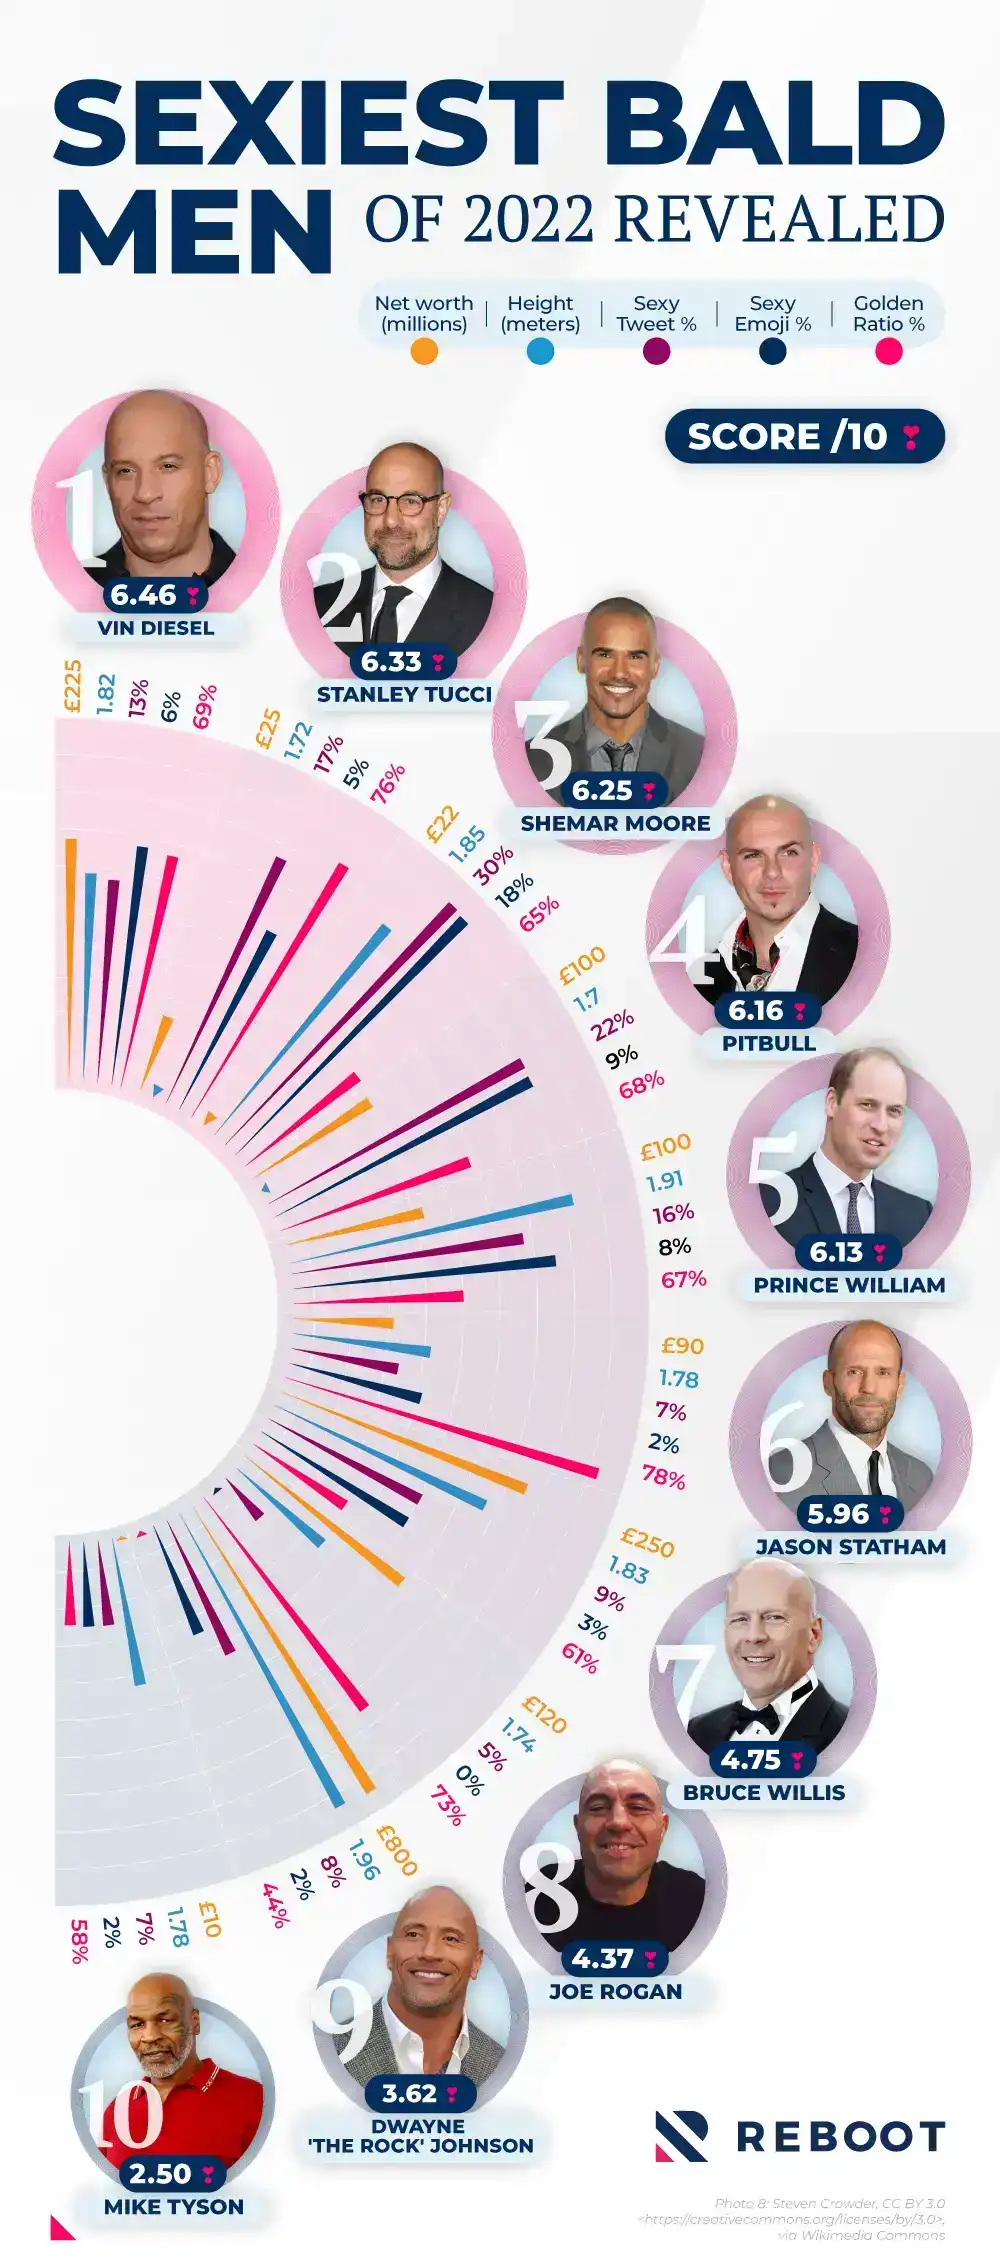 The top 10 sexiest bald men